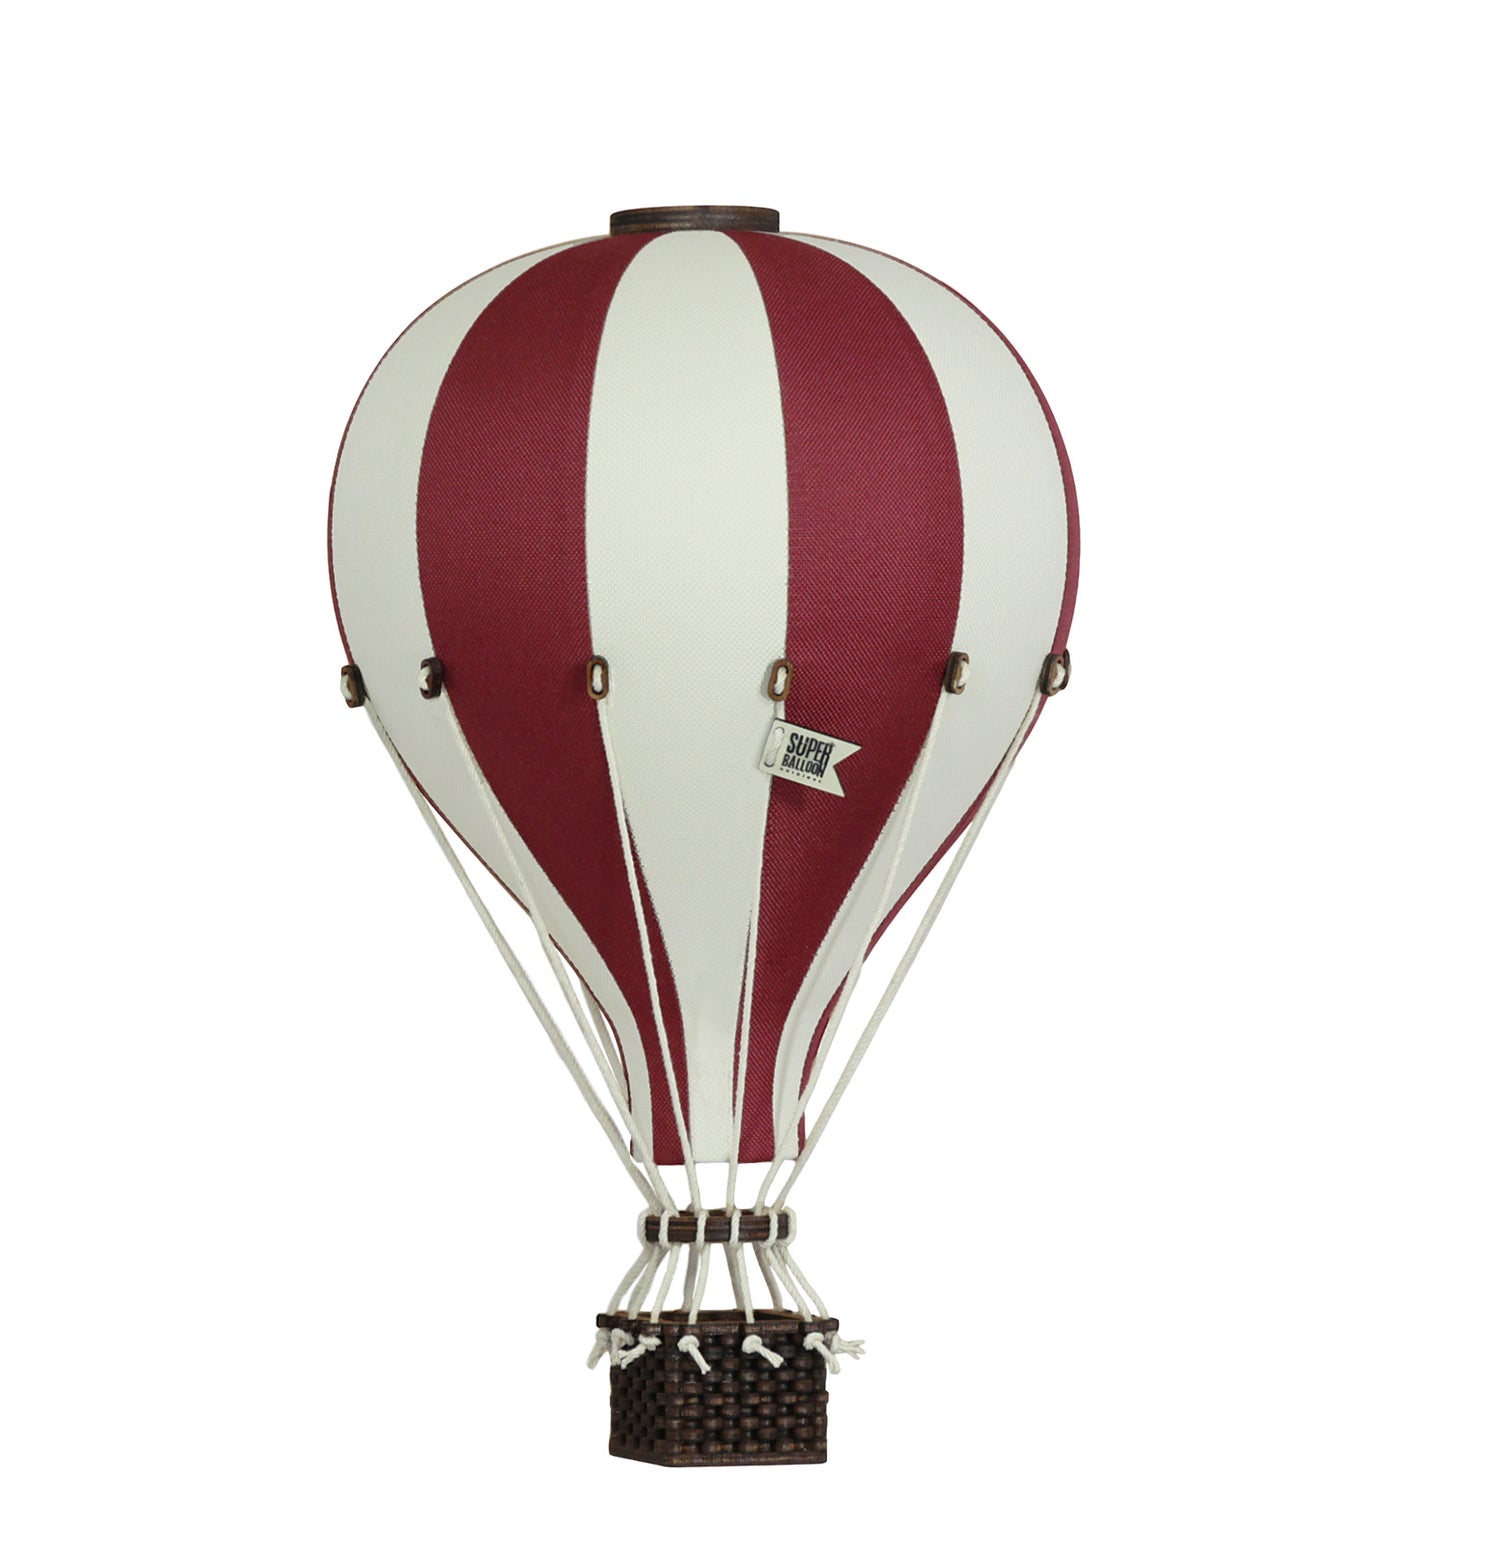 Deko-Heißluftballon S 'Beige/Burgundy' - The Little One • Family.Concept.Store. 